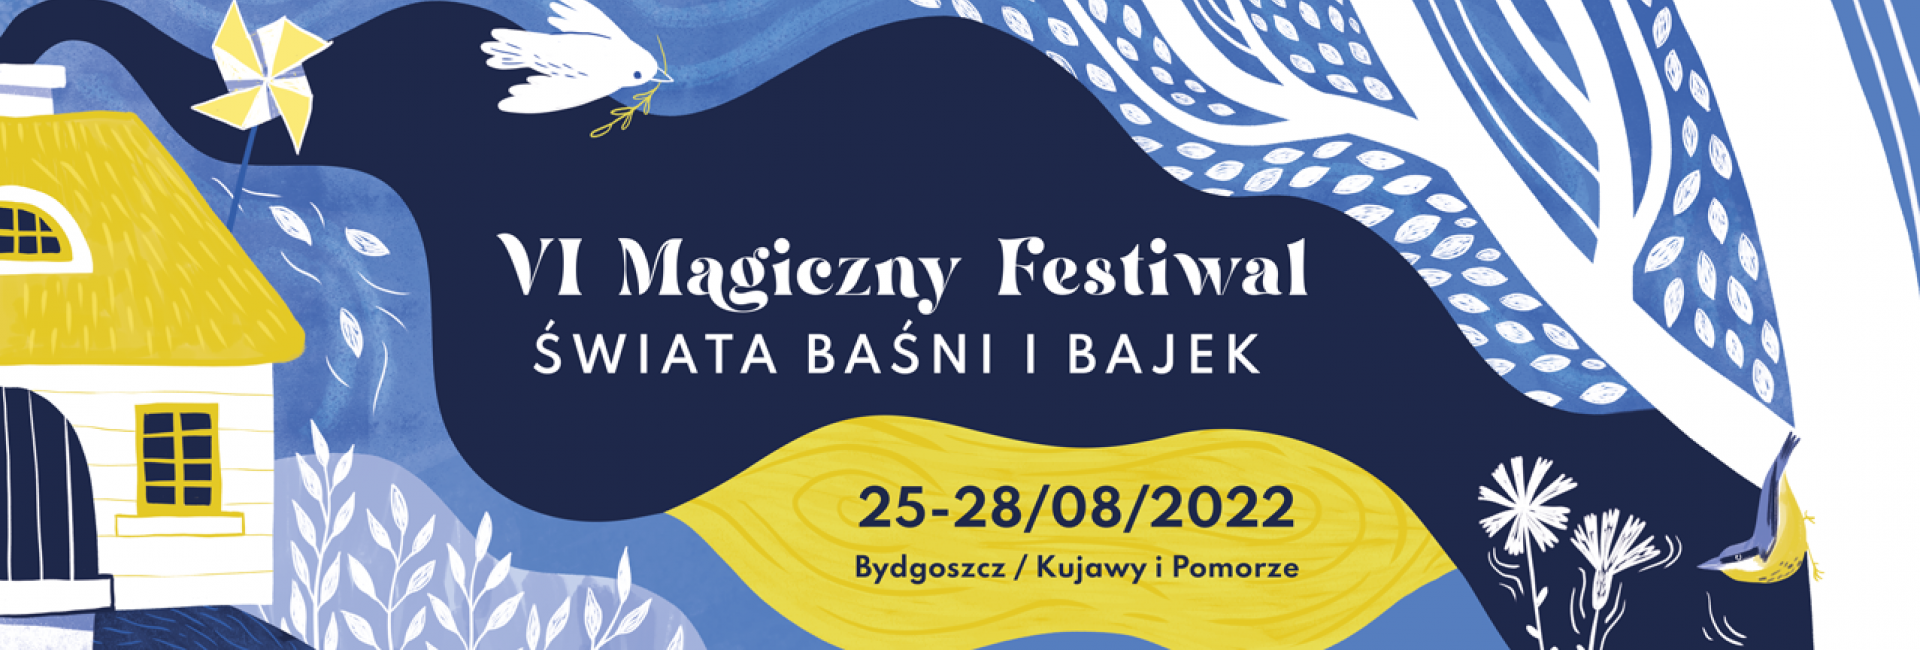 Magiczny Festiwal Świata Baśni i Bajek